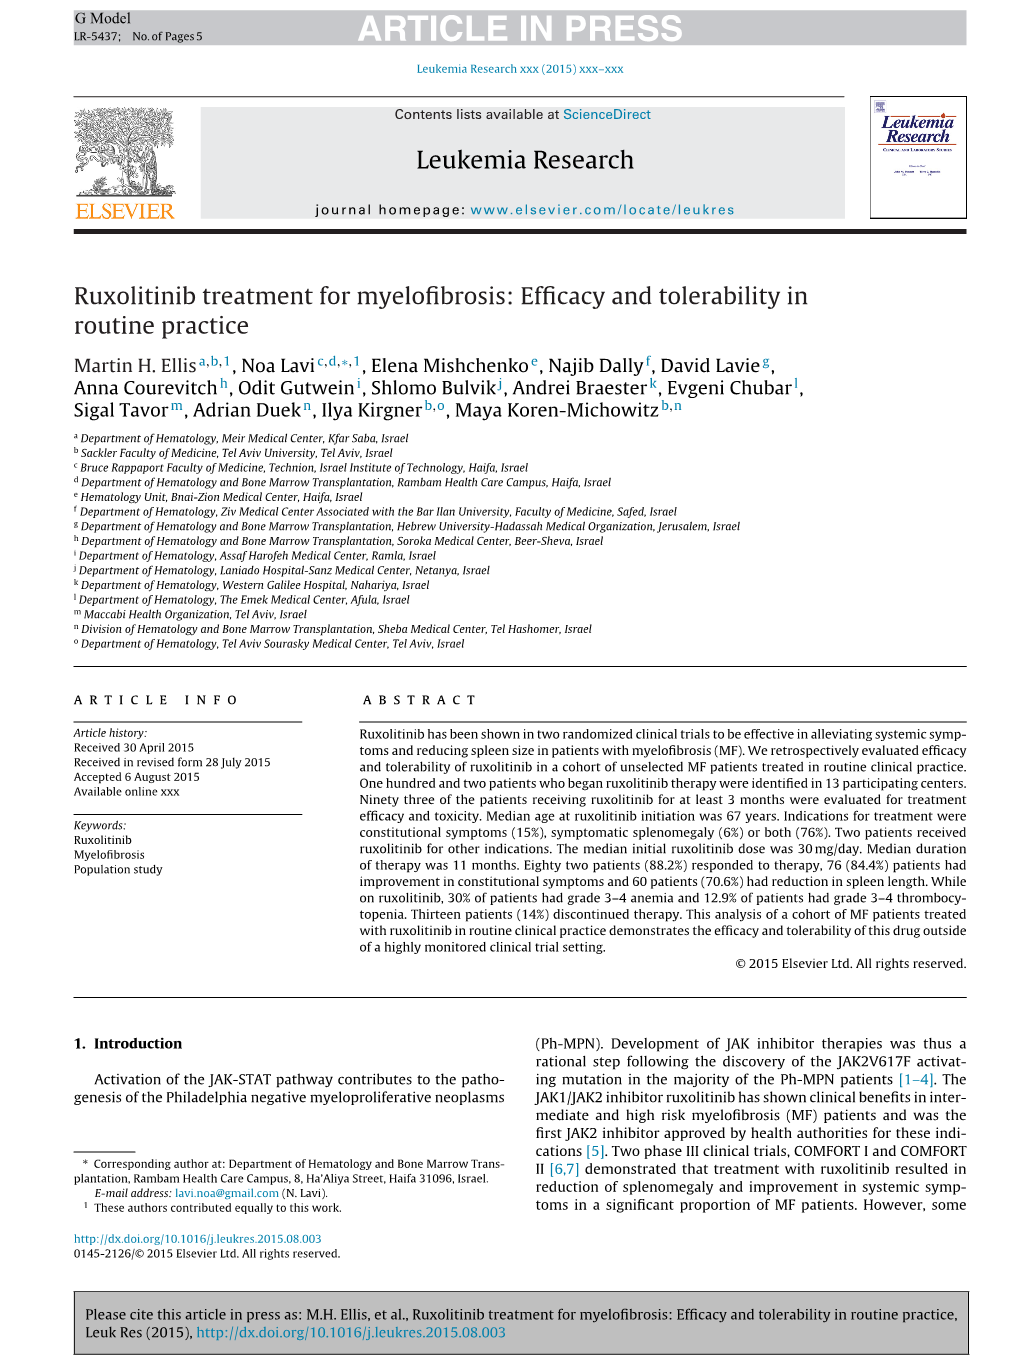 Ruxolitinib Treatment for Myelofibrosis: Efficacy And